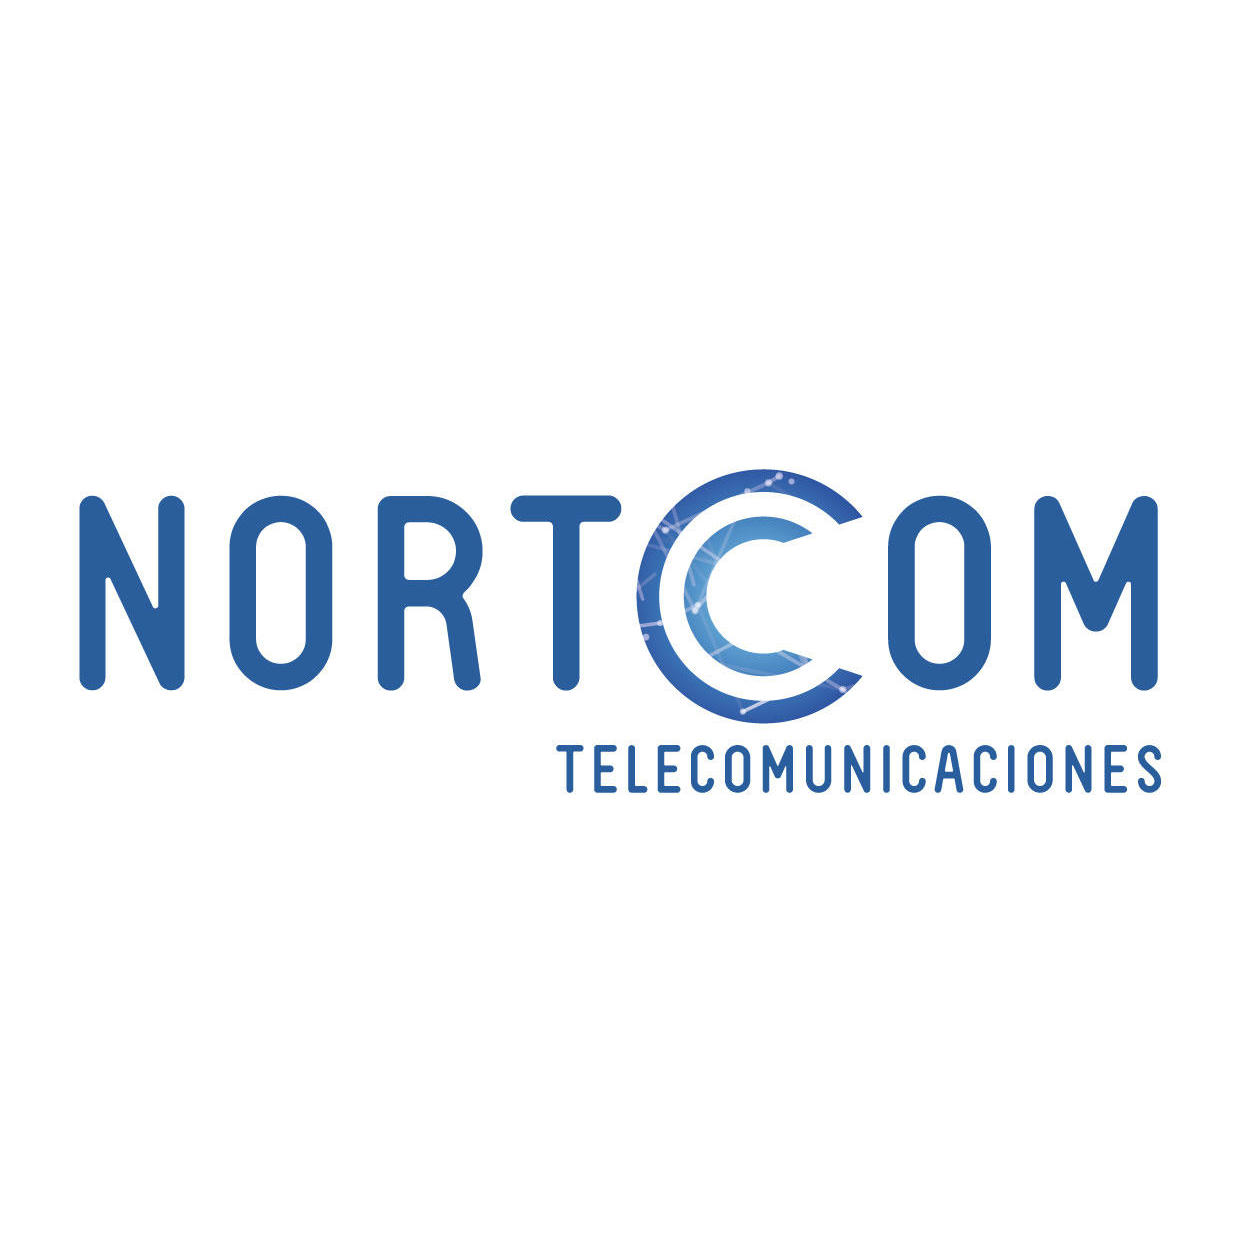 Nortcom Telecomunicaciones Sl Logo